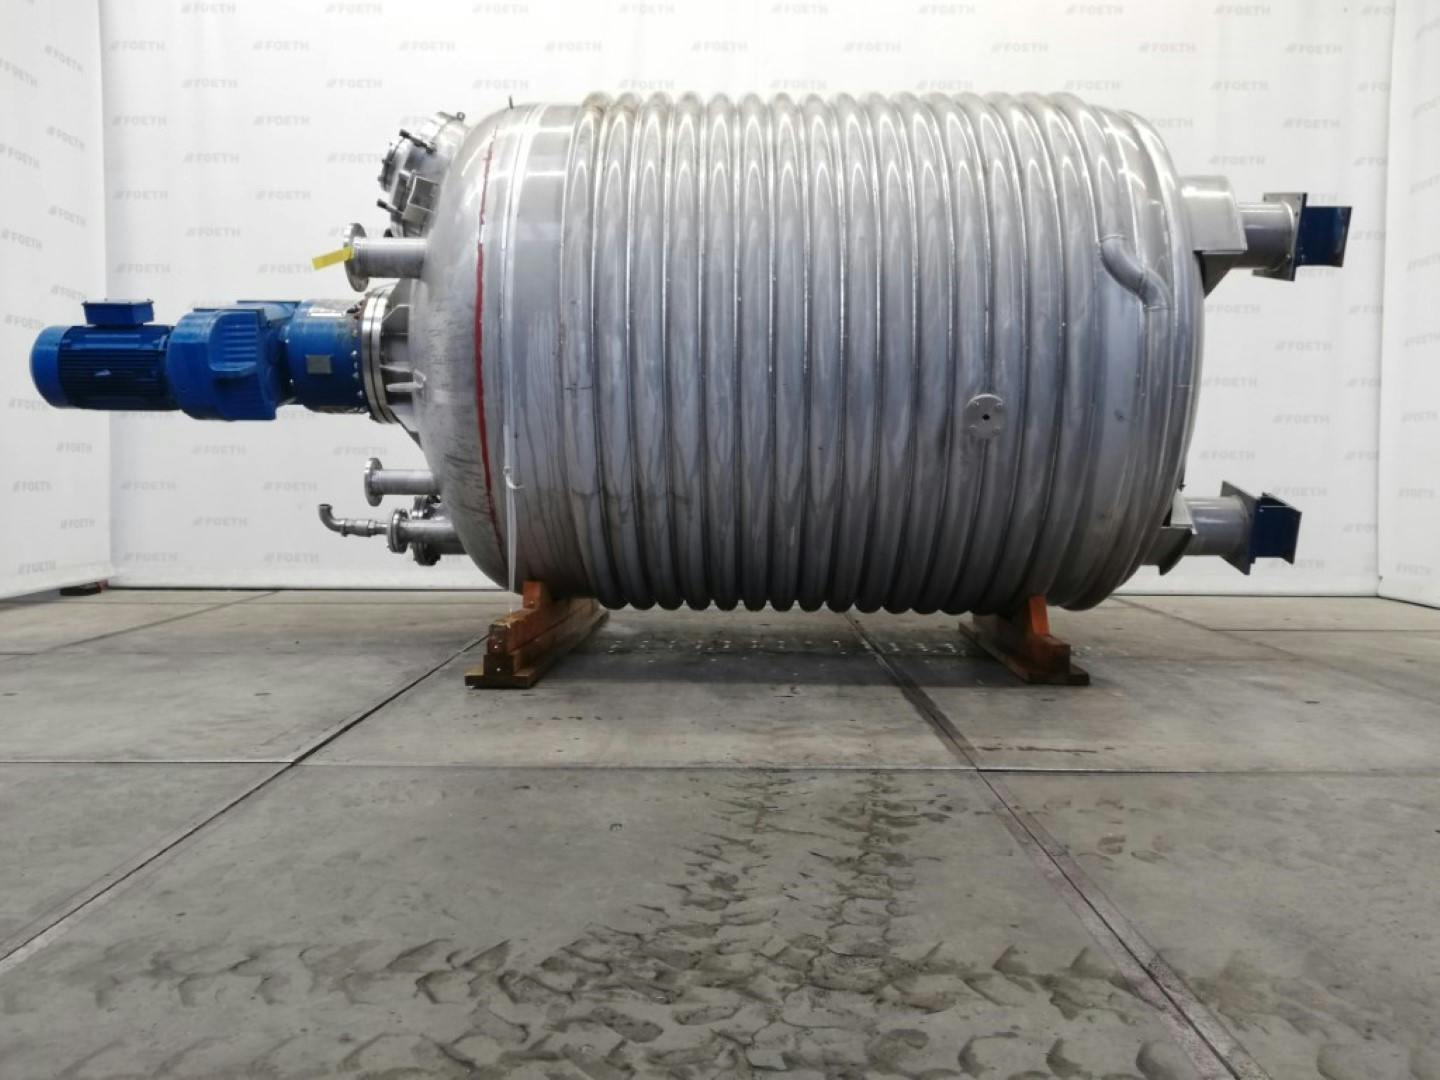 Rudert Edelstahl-Technik Reaktor 10m3 - Reactor de acero inoxidable - image 1